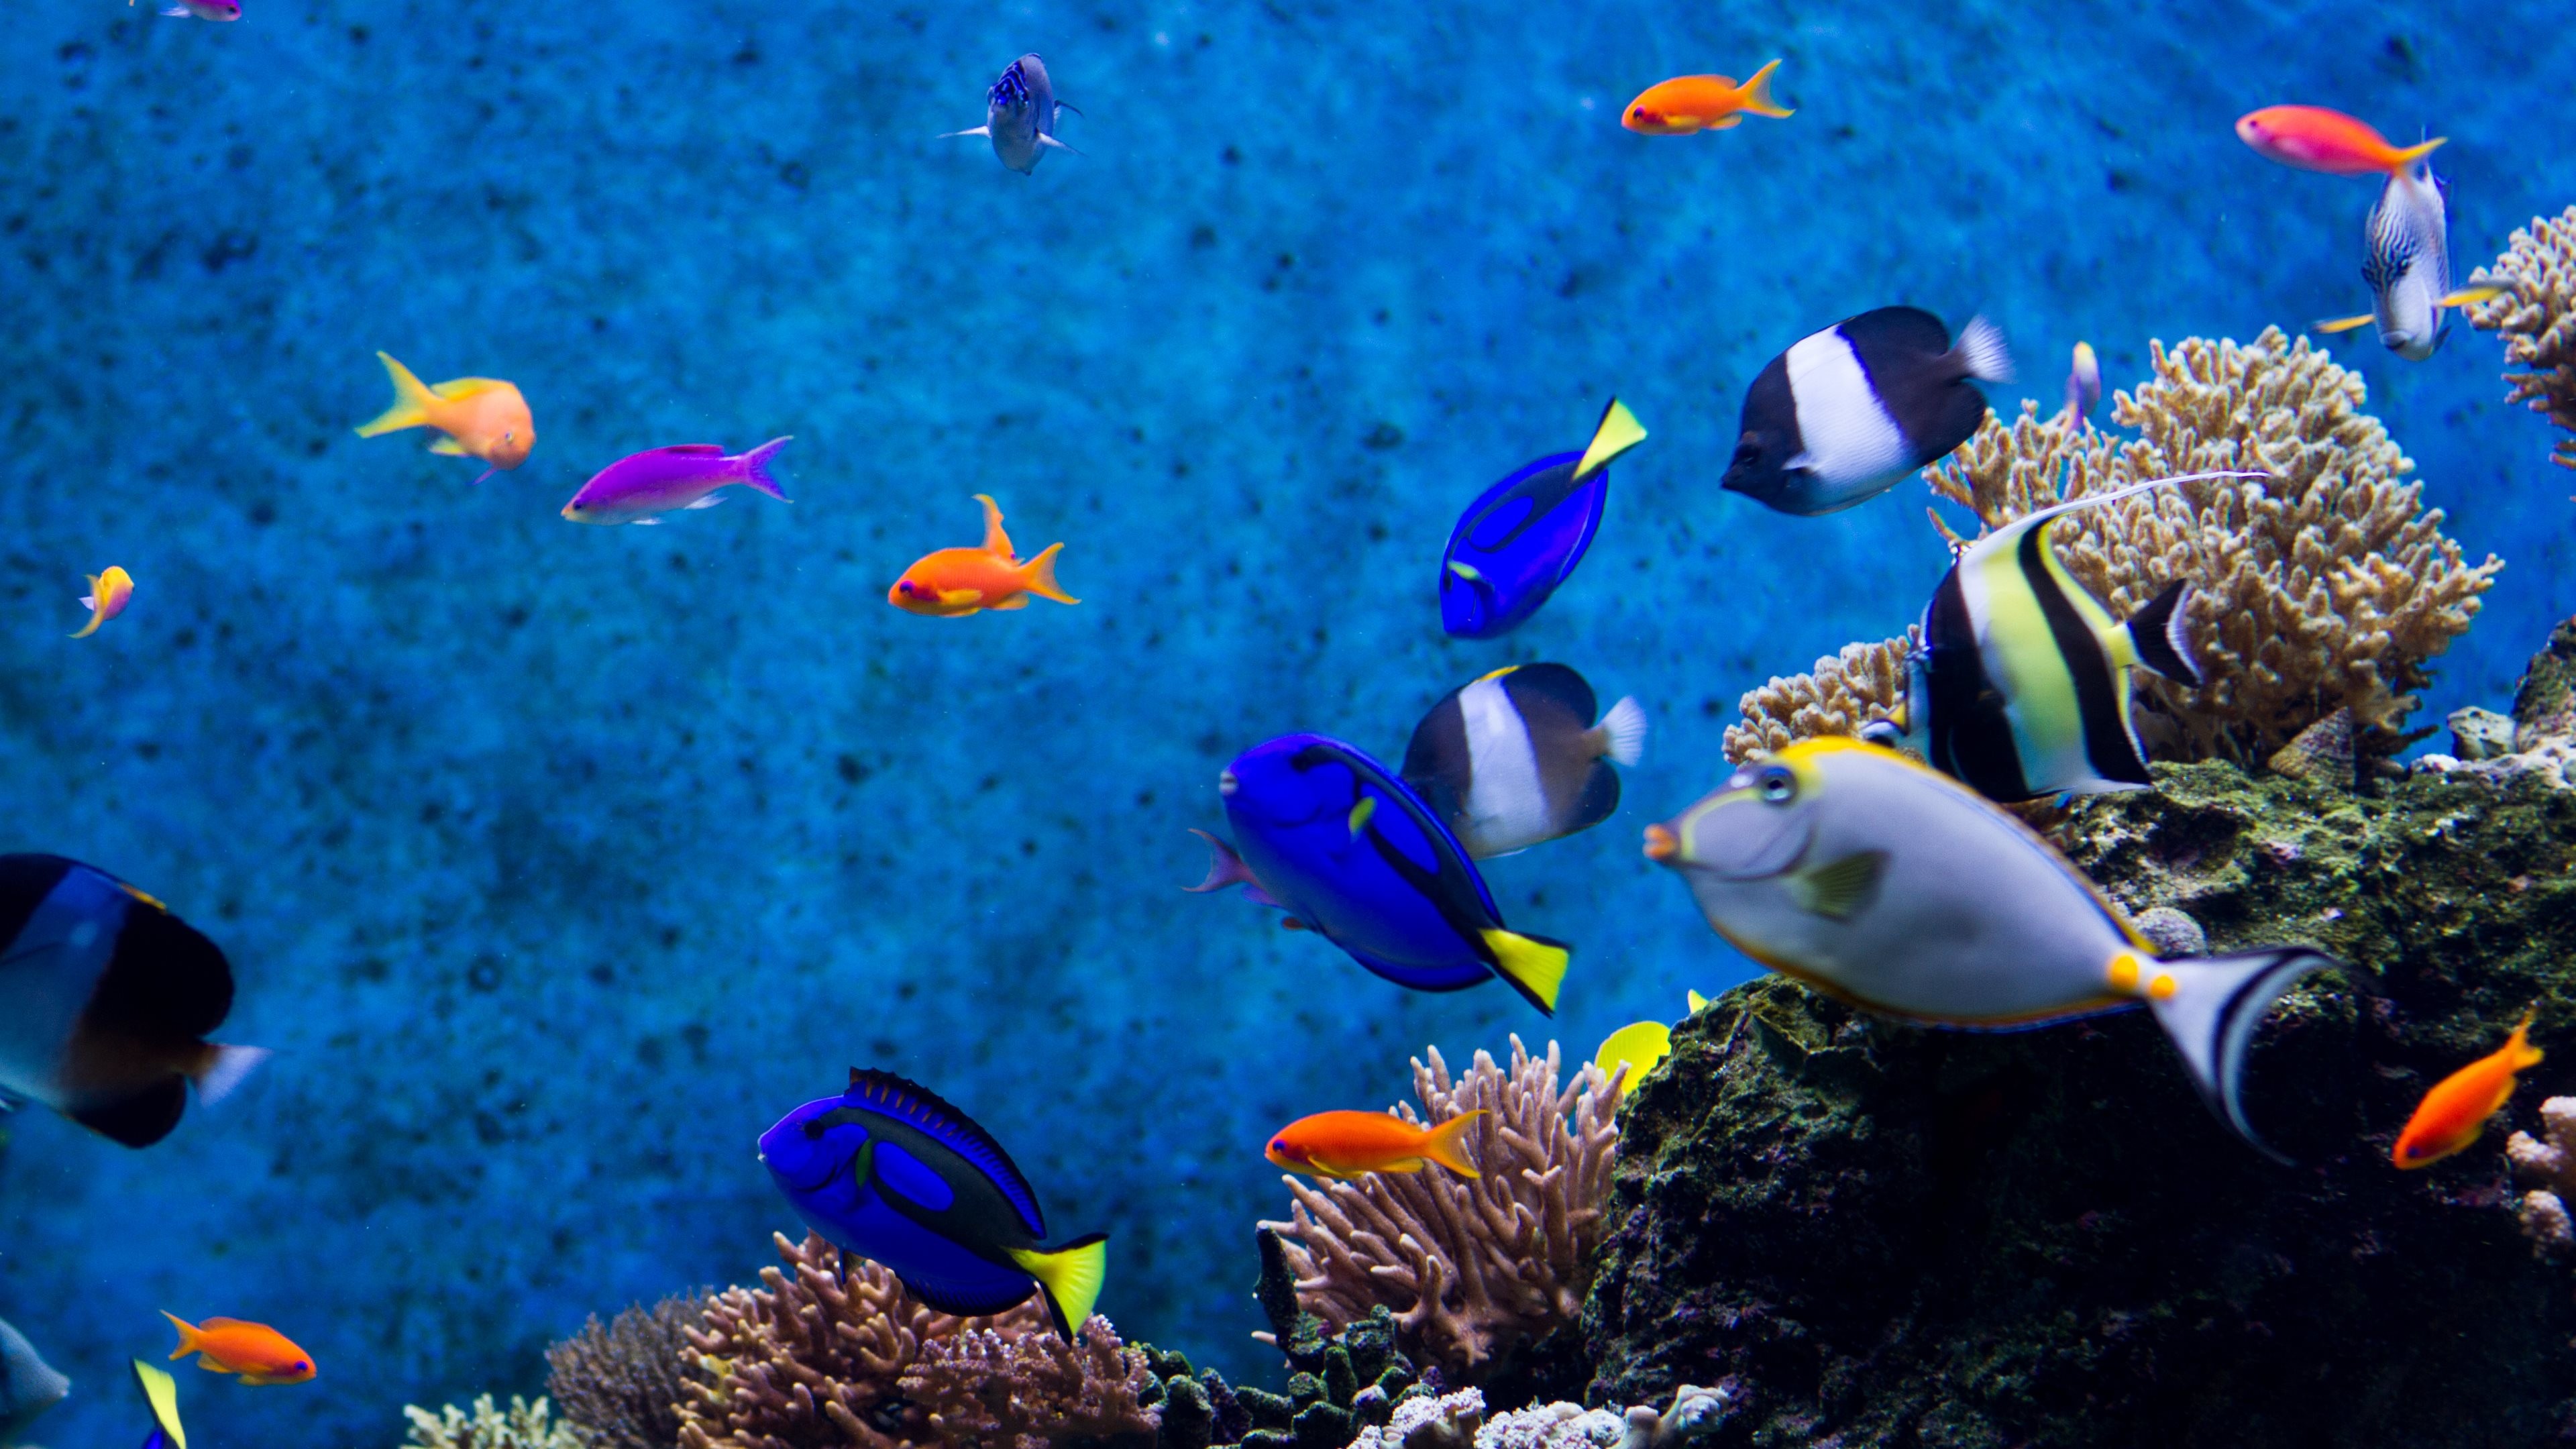 3840x2160 Aquarium Live Wallpaper For Desktop : Aquarium hd 1080p wallpaper  wallpapersafari